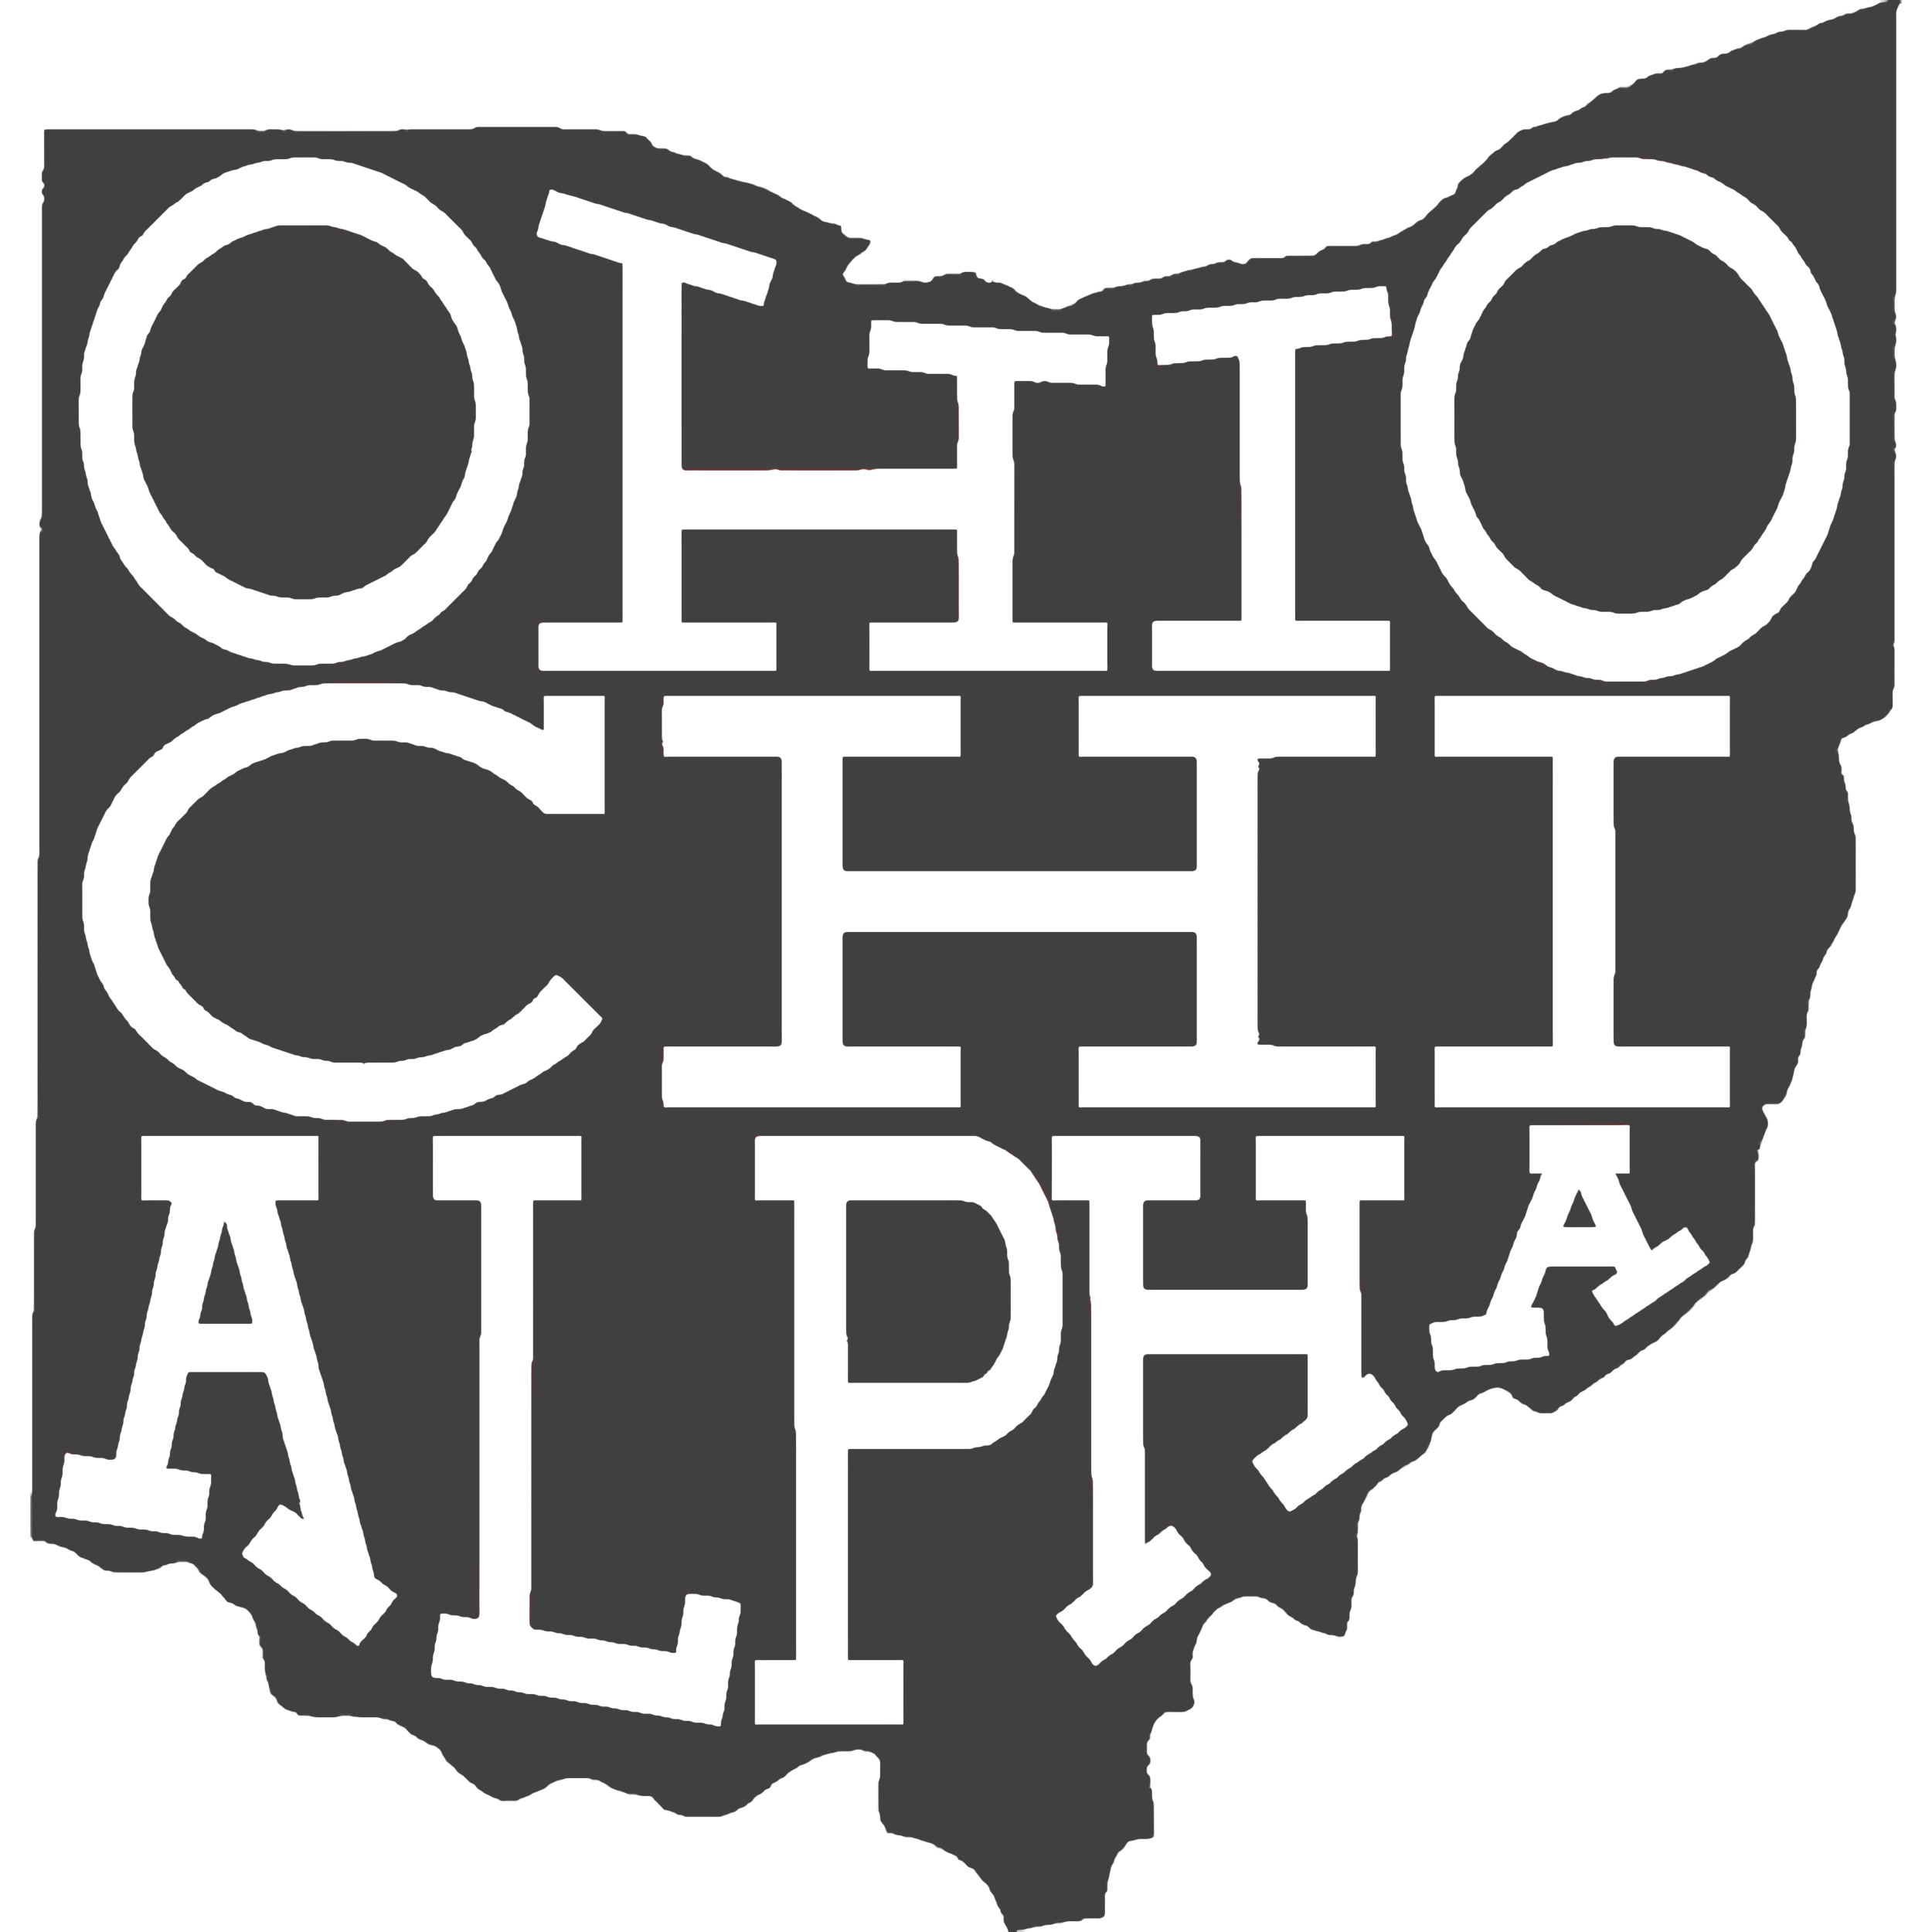 Ohio XA